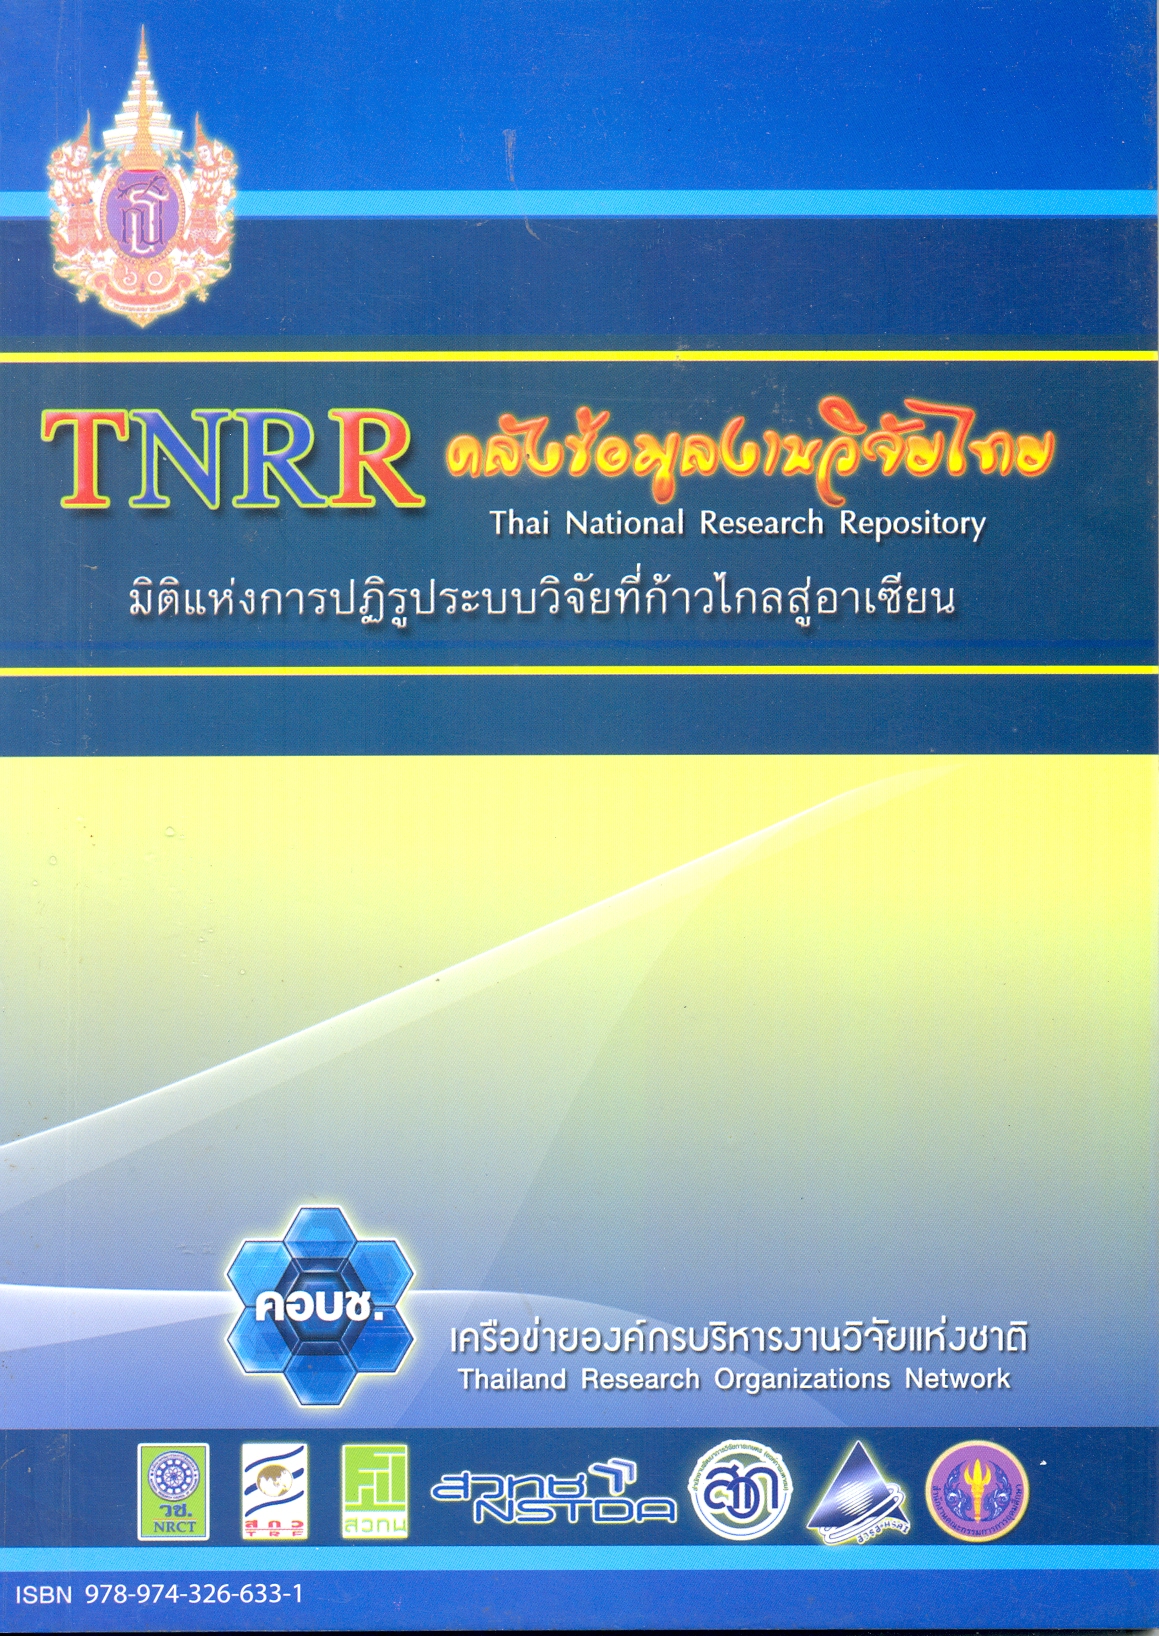 TNRR คลังข้อมูลงานวิจัยไทย มิติแห่งการปฏิรูประบบวิจัยที่ก้าวไกลสูอาเซียน